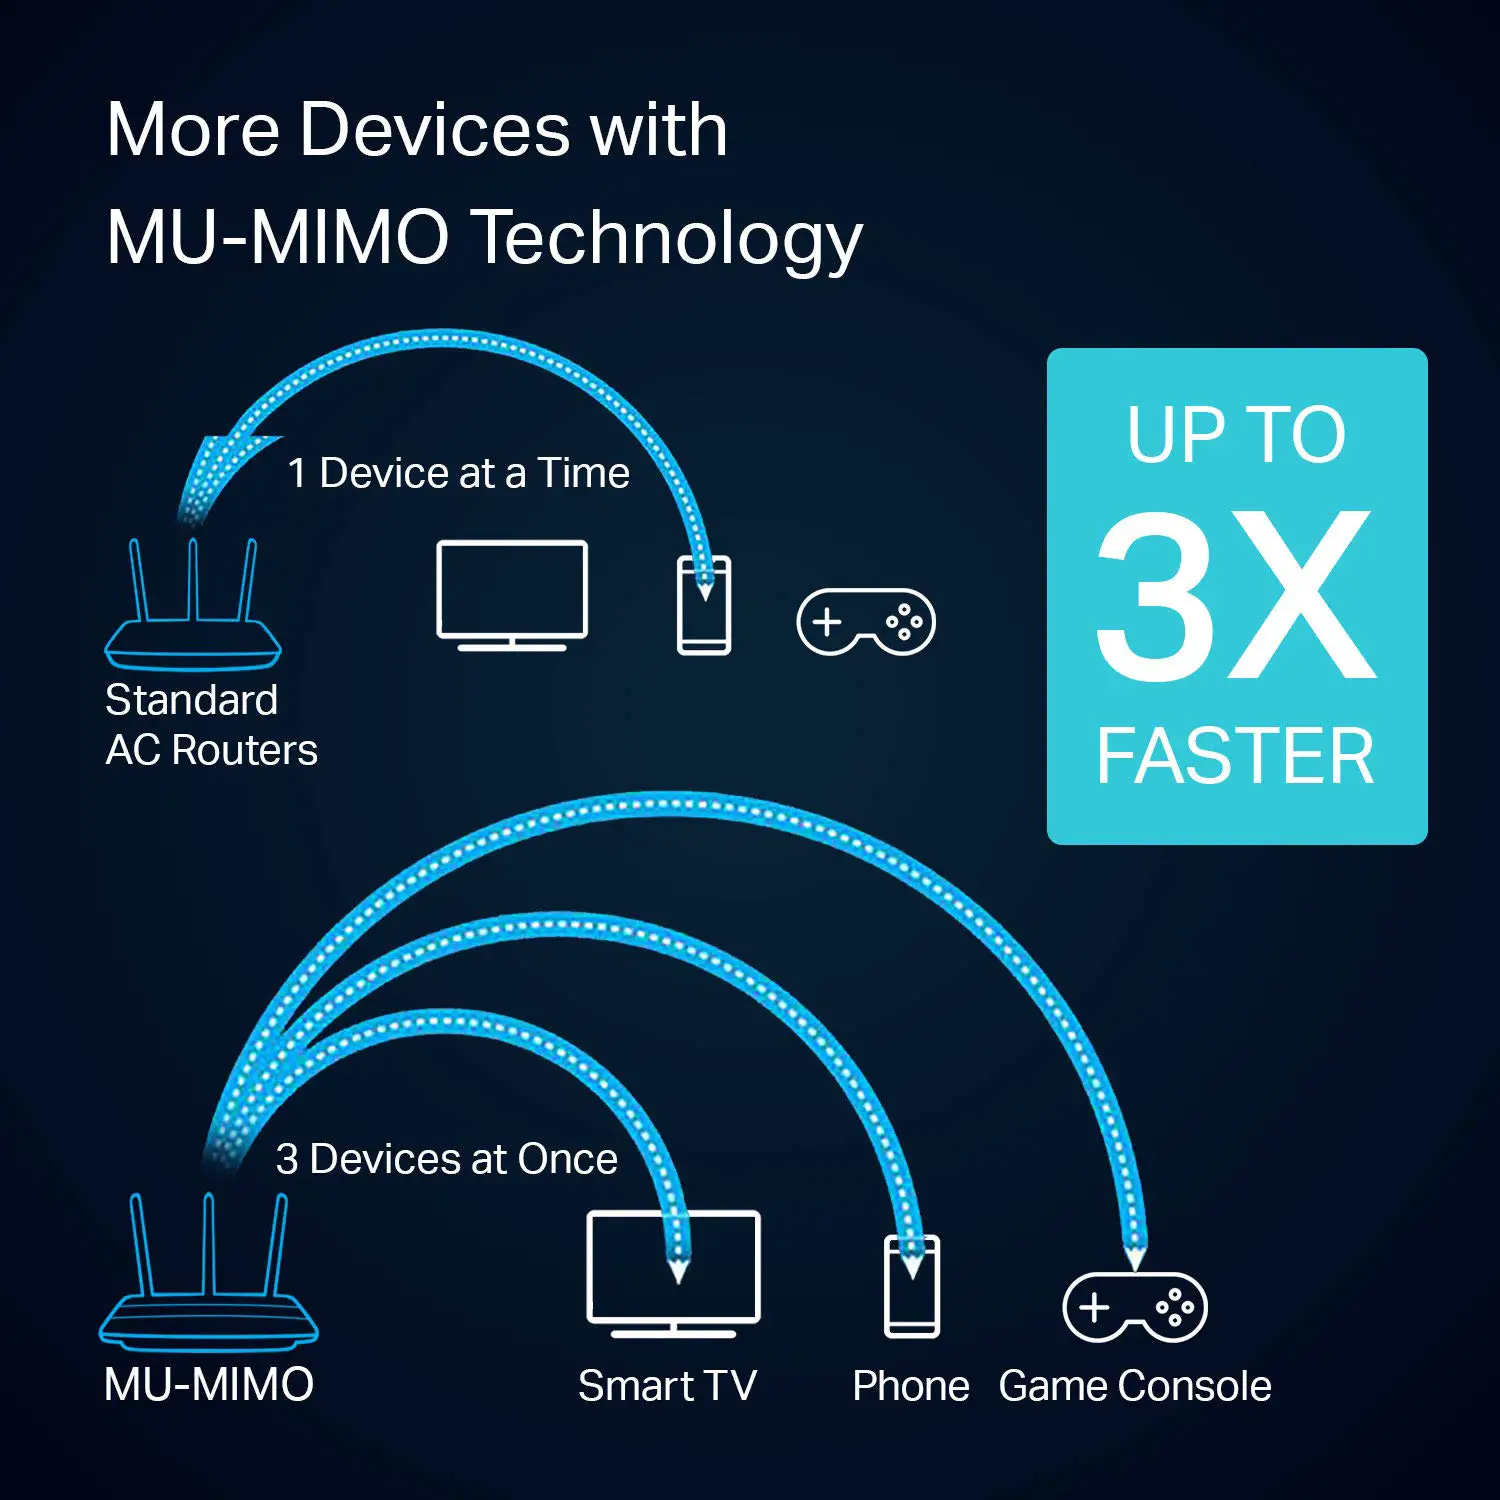 Le MU-MIMO permet d'envoyer plusieurs signaux en même temps